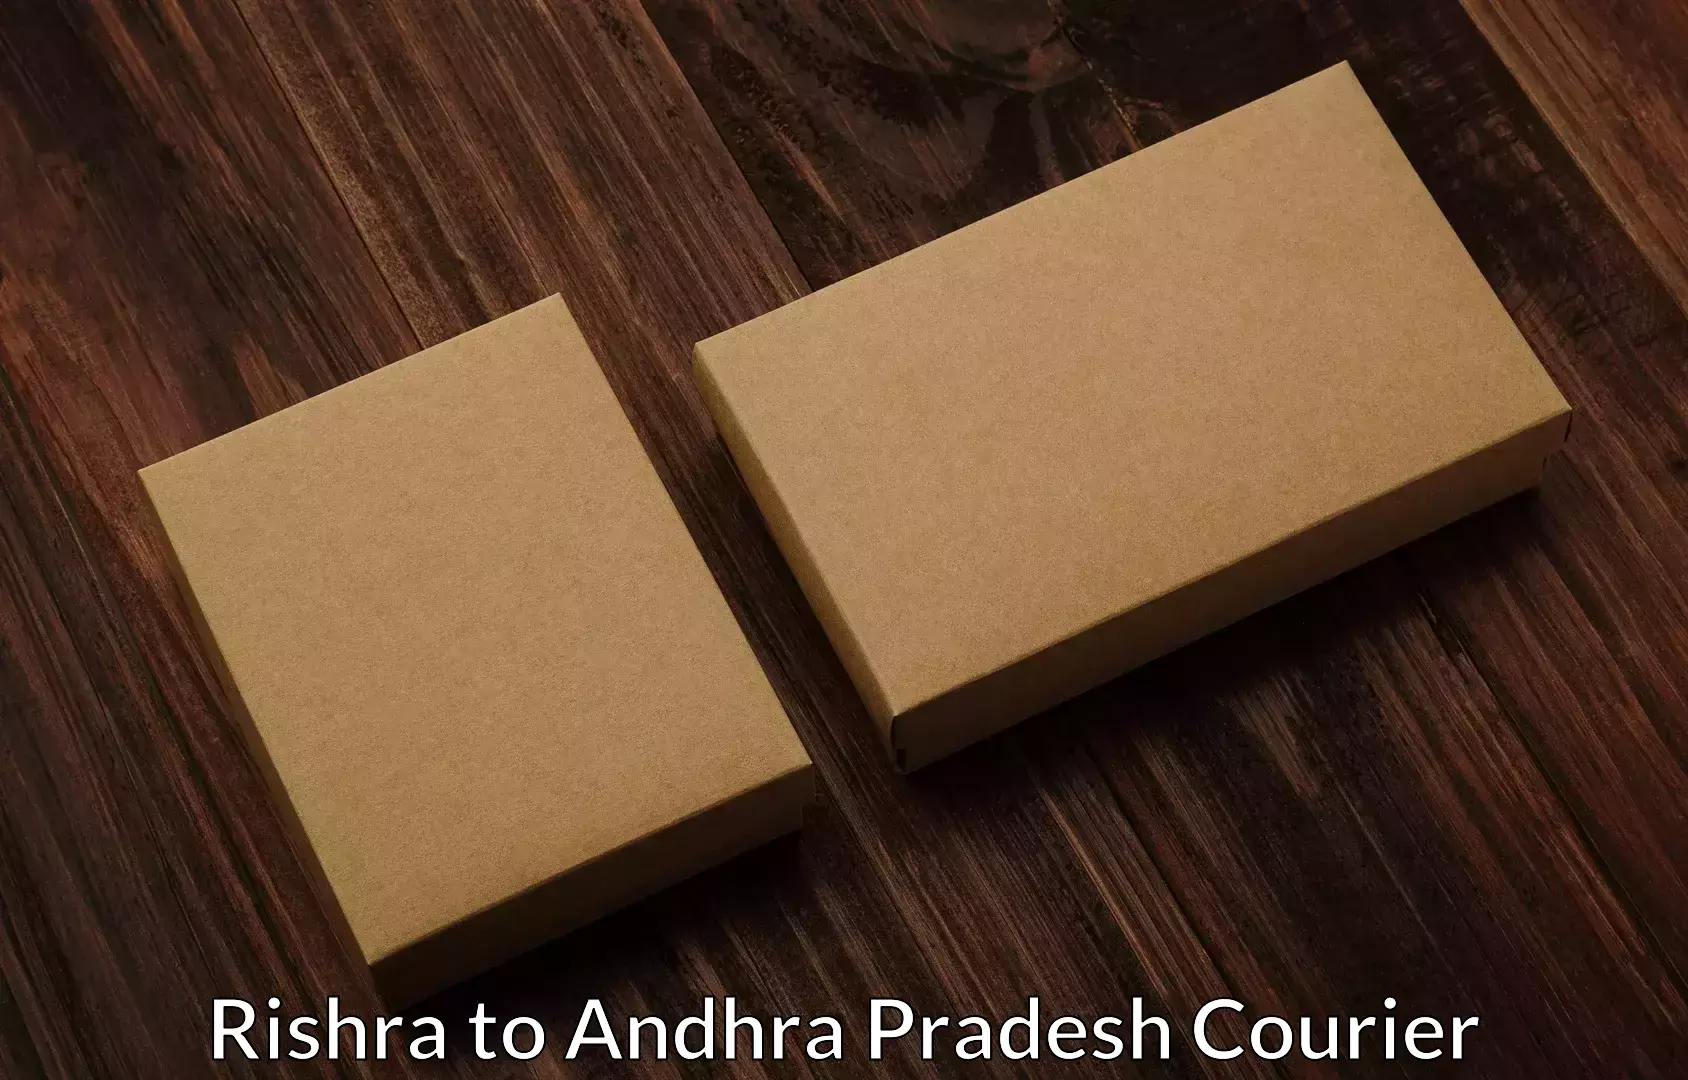 Furniture moving specialists Rishra to Konduru